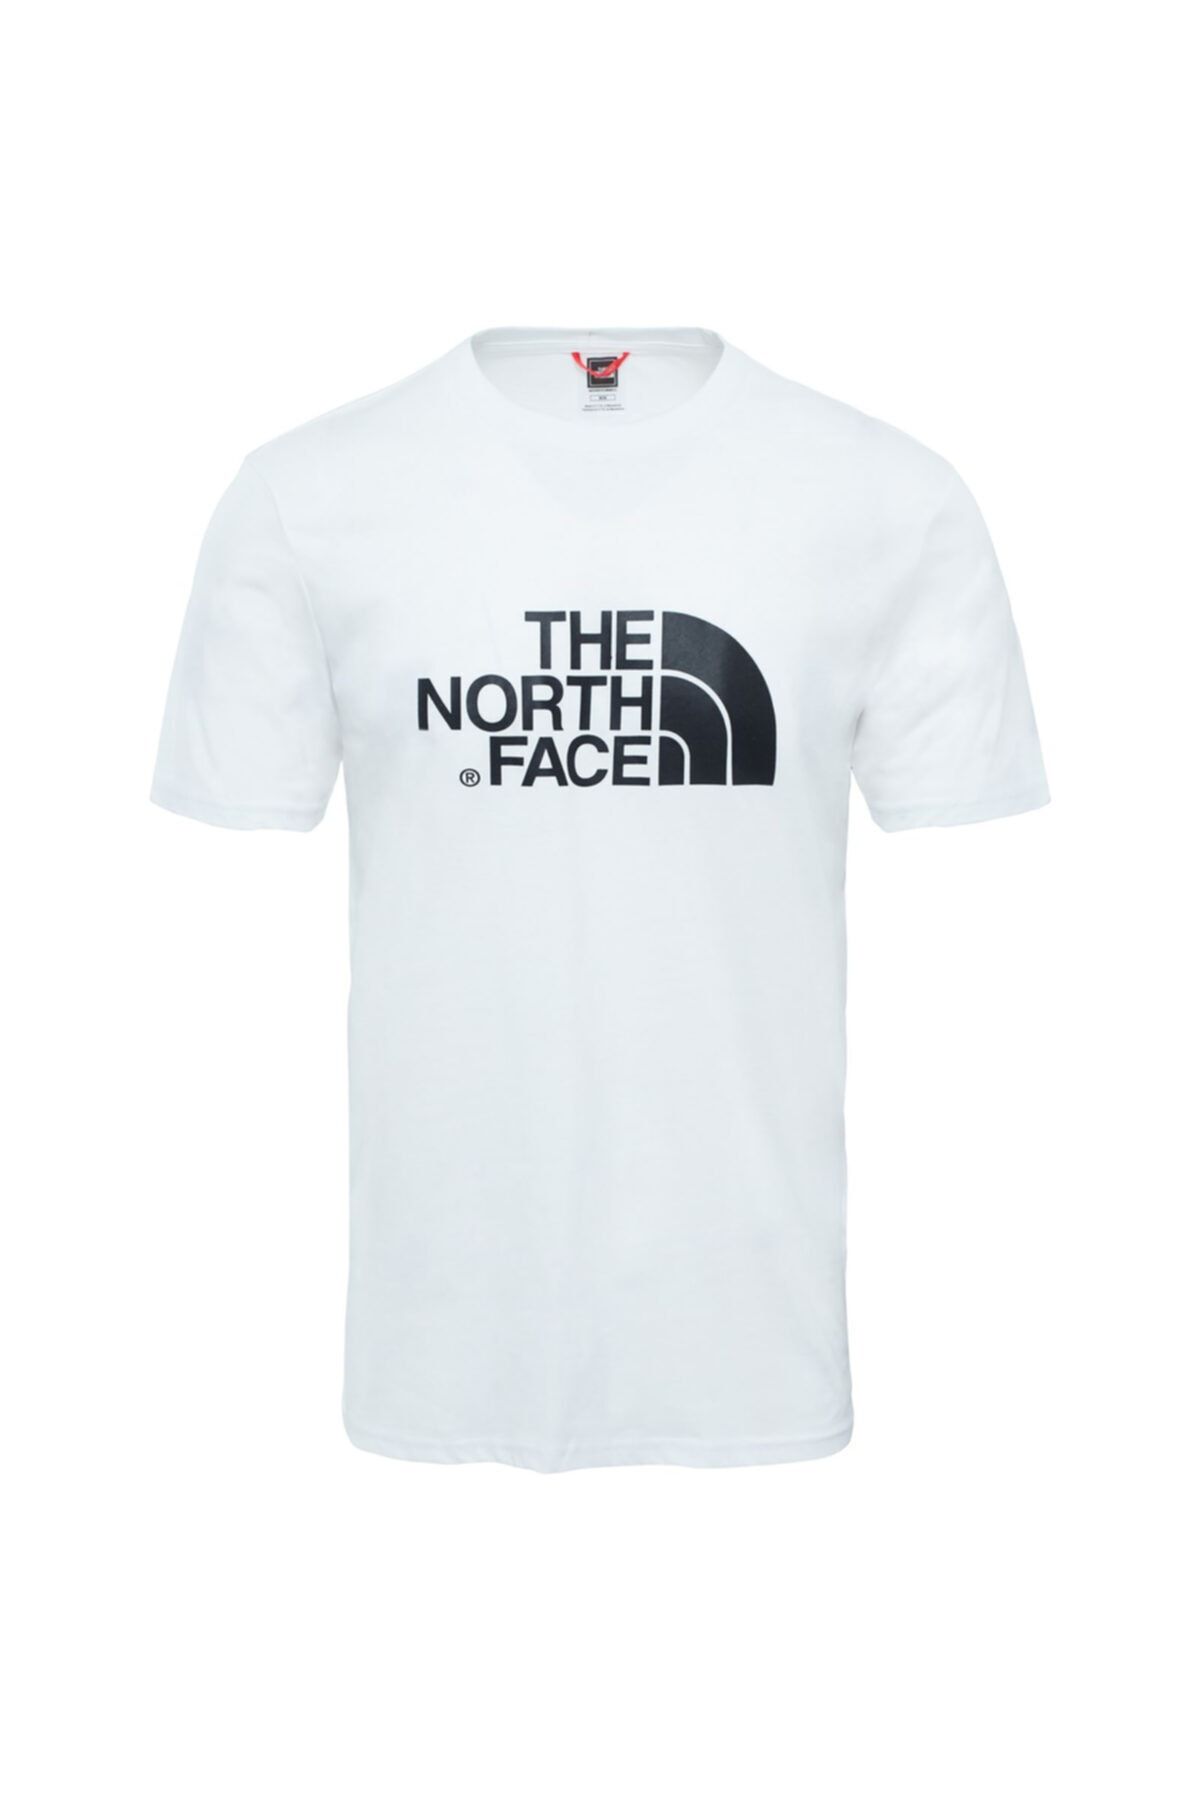 تی شرت مردانه یقه گرد سفید نورث فیس North Face (برند آمریکا)